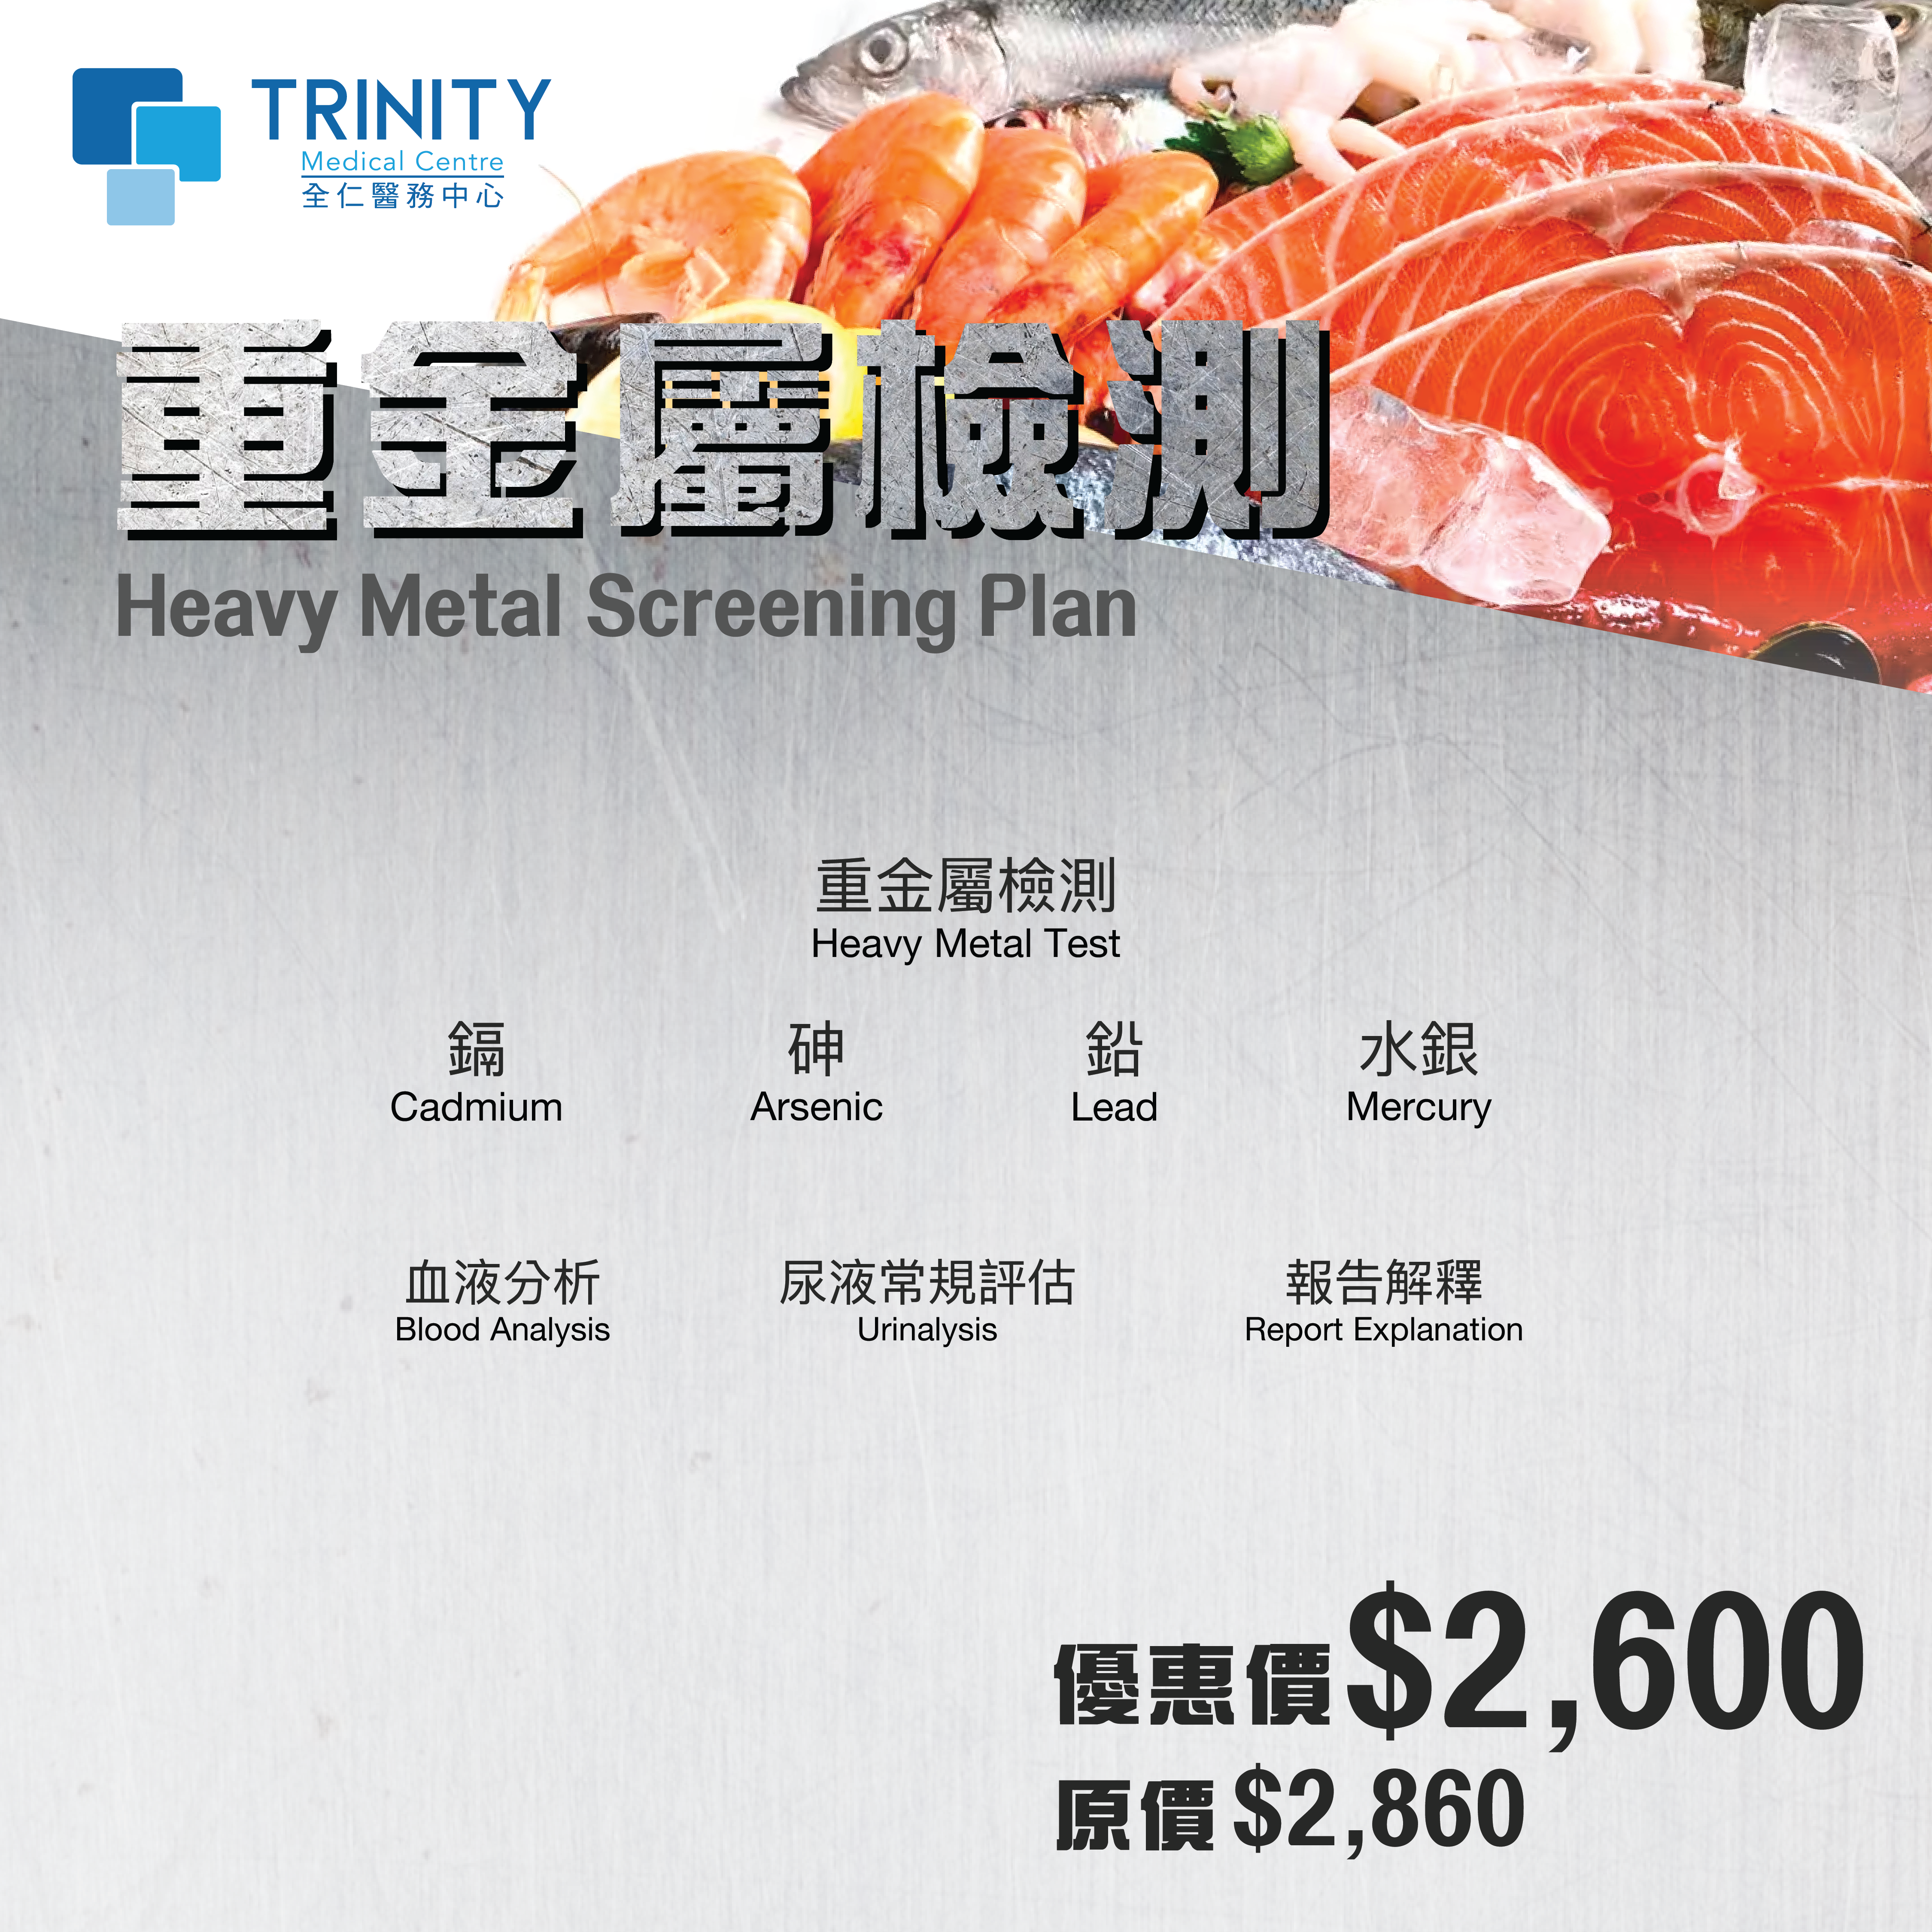 Heavy Metal Screening Plan